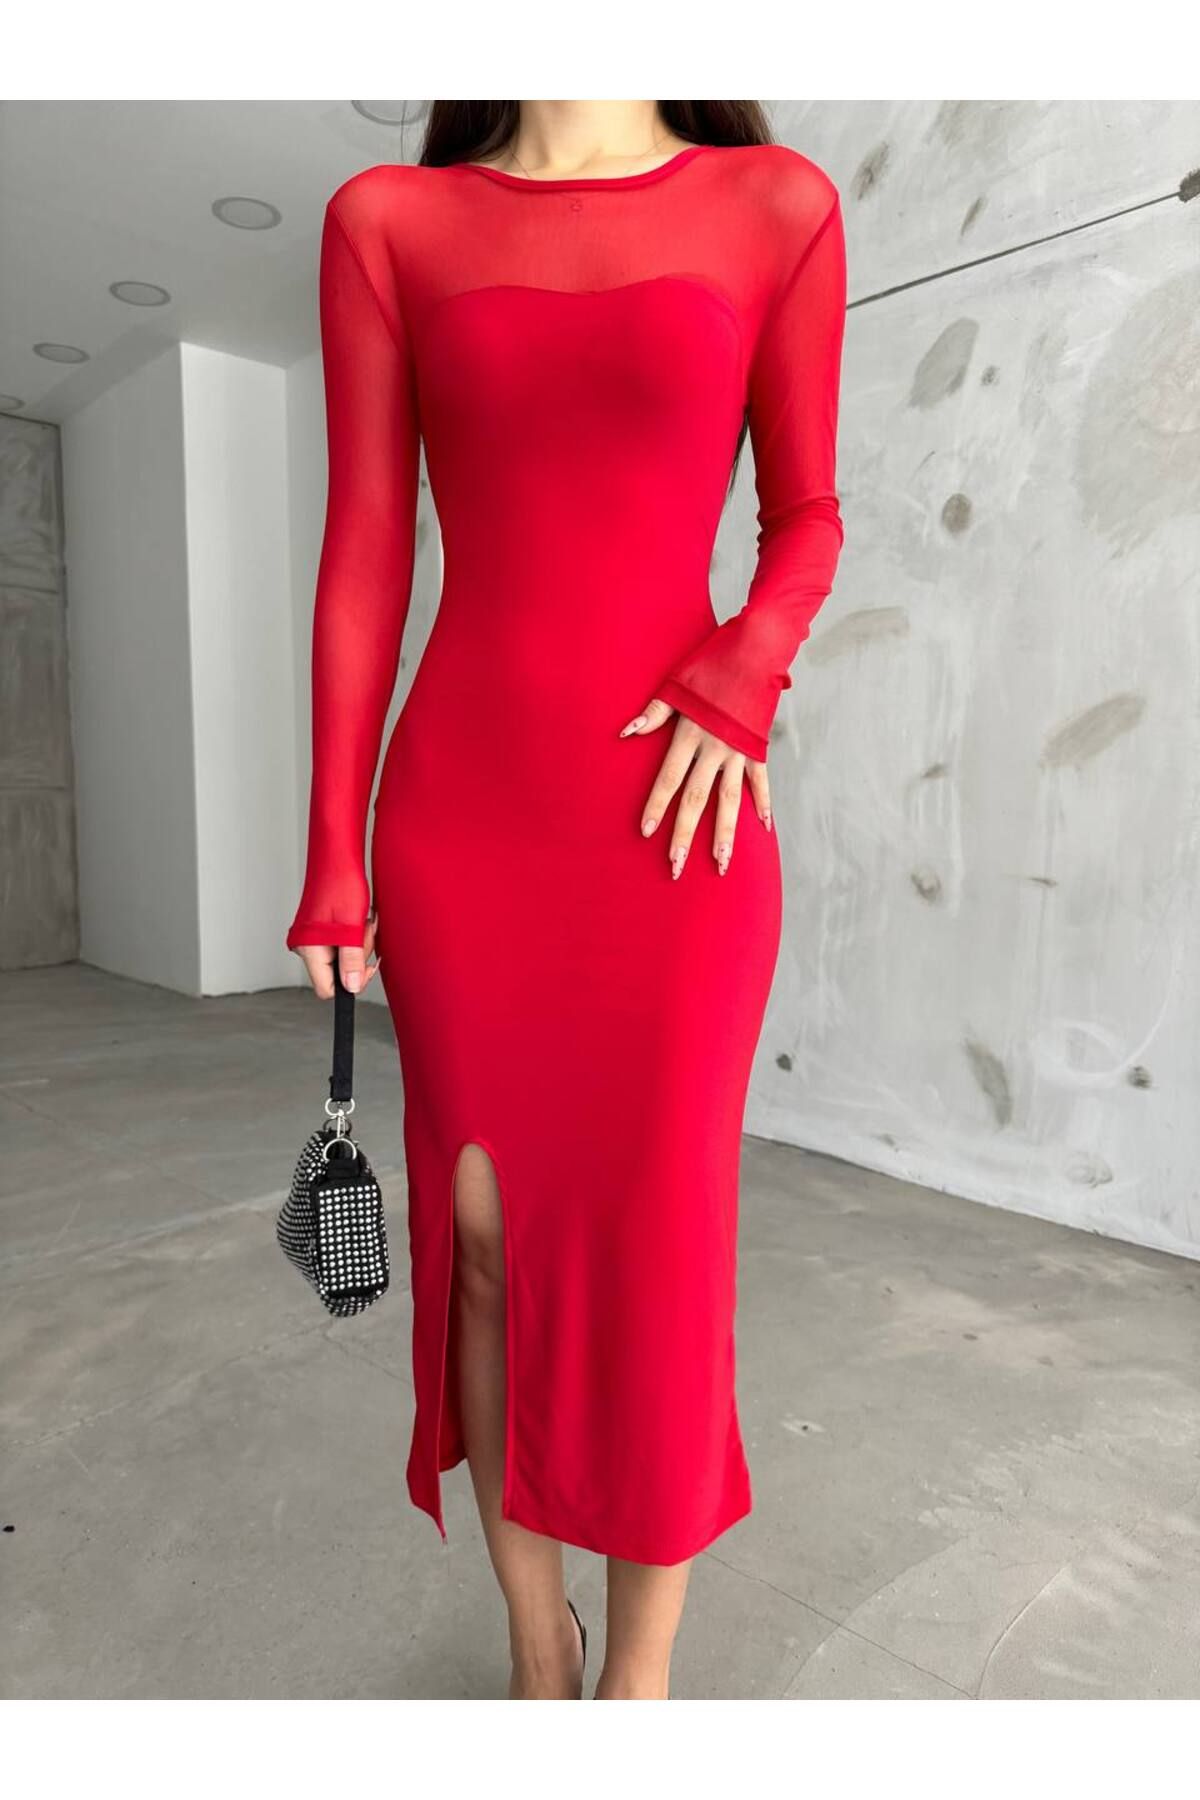 BİKELİFE Kadın Kırmızı Yırtmaç Detaylı Likralı Kalem Elbise